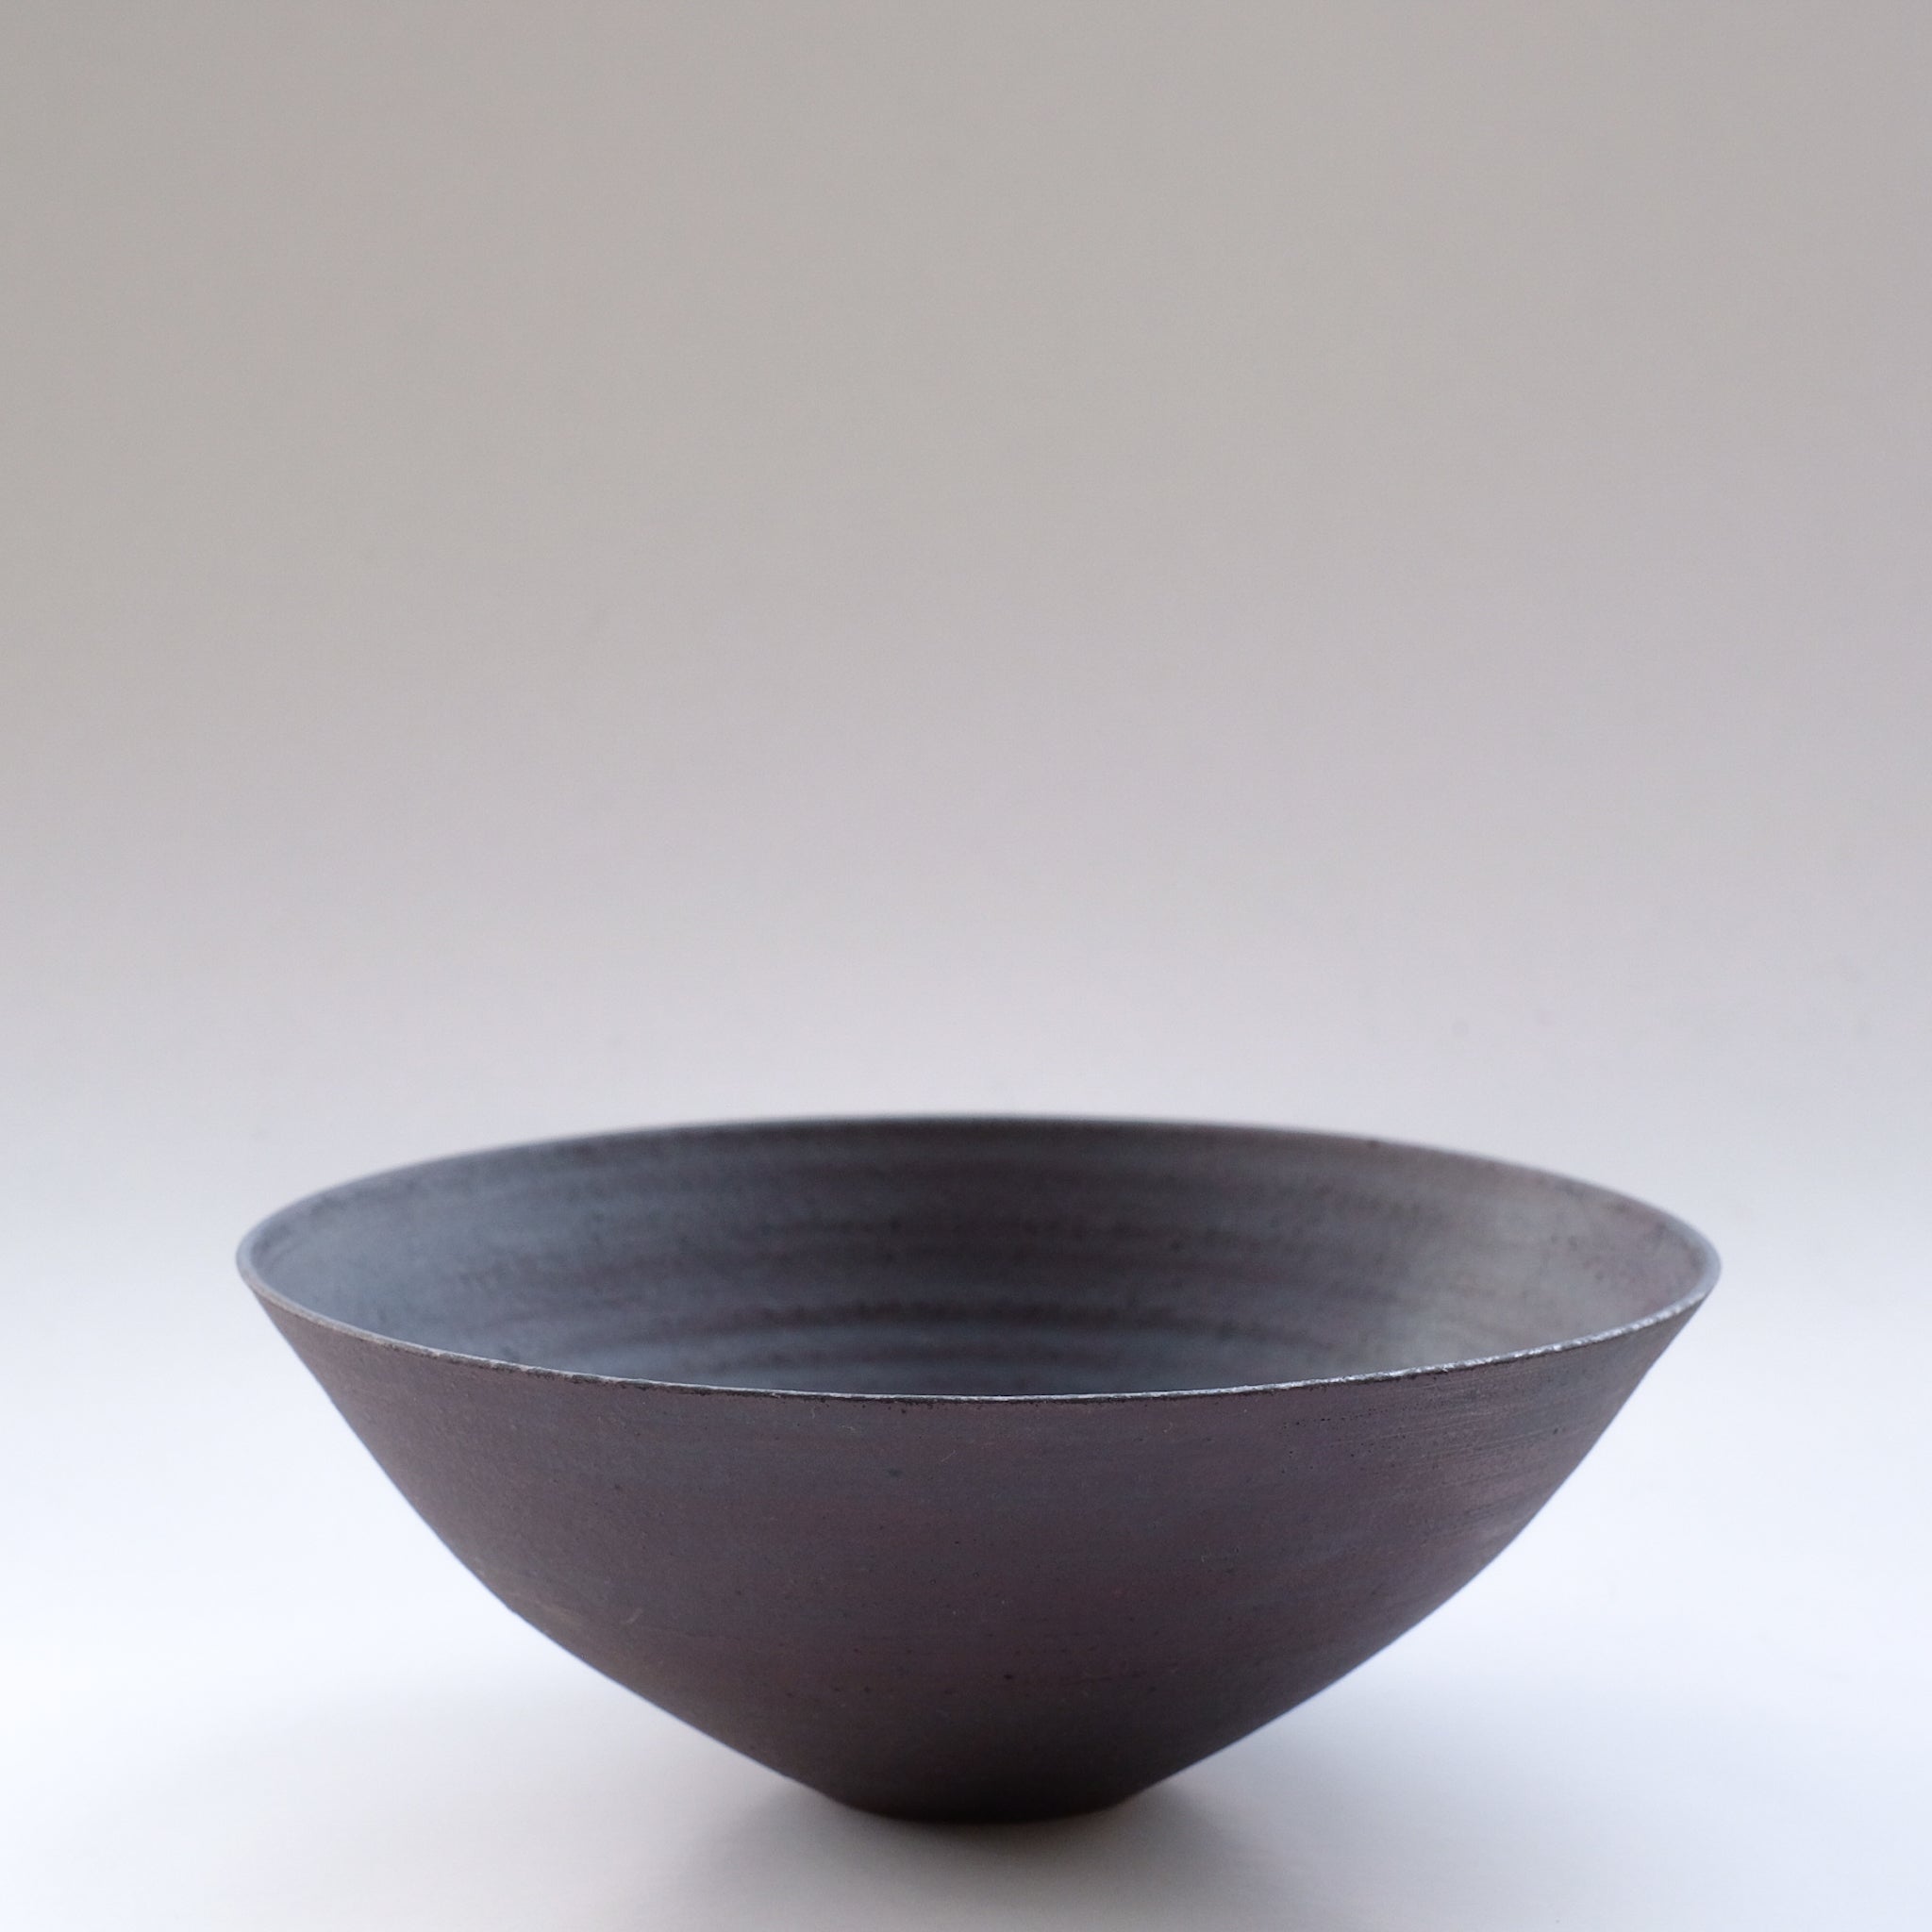 二階堂明弘 錆器 ボウル (φ17.5cm) Akihiro Nikaido Bowl (φ17.5cm